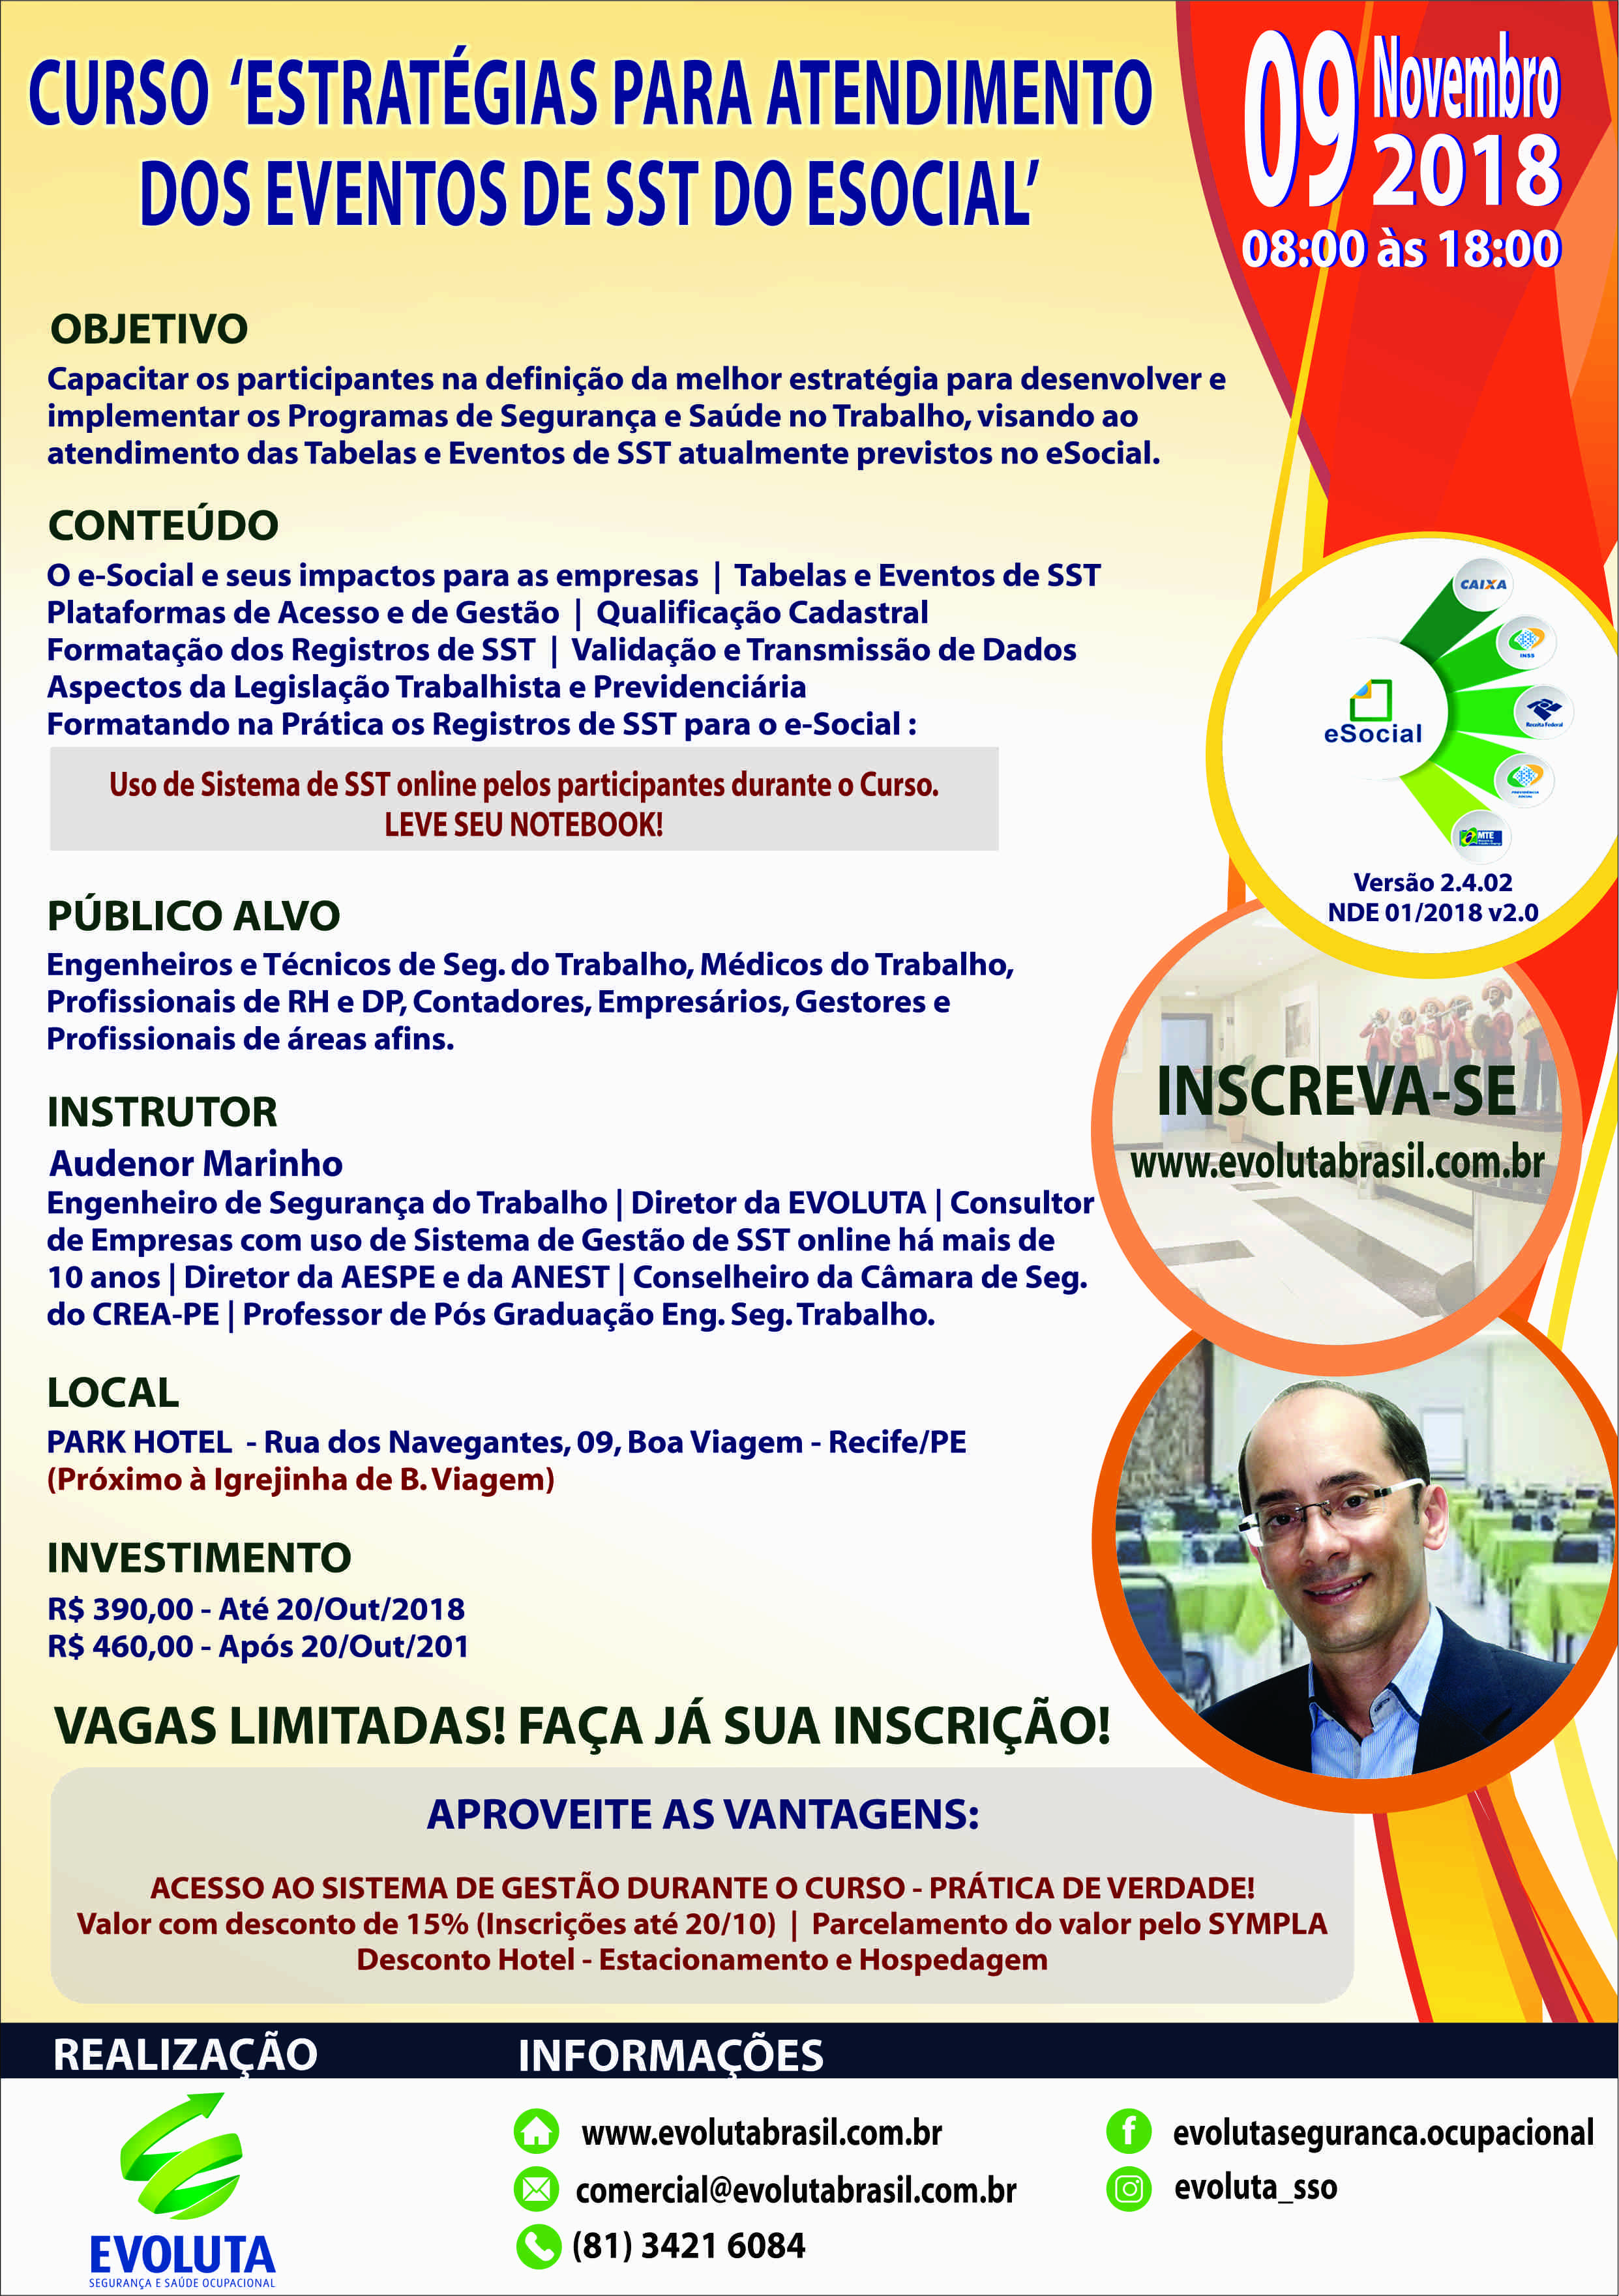 Evoluta promove Curso ‘Estratégias para Atendimento dos Eventos de SST do e-Social’, dia 09/Nov/18, em Recife/PE